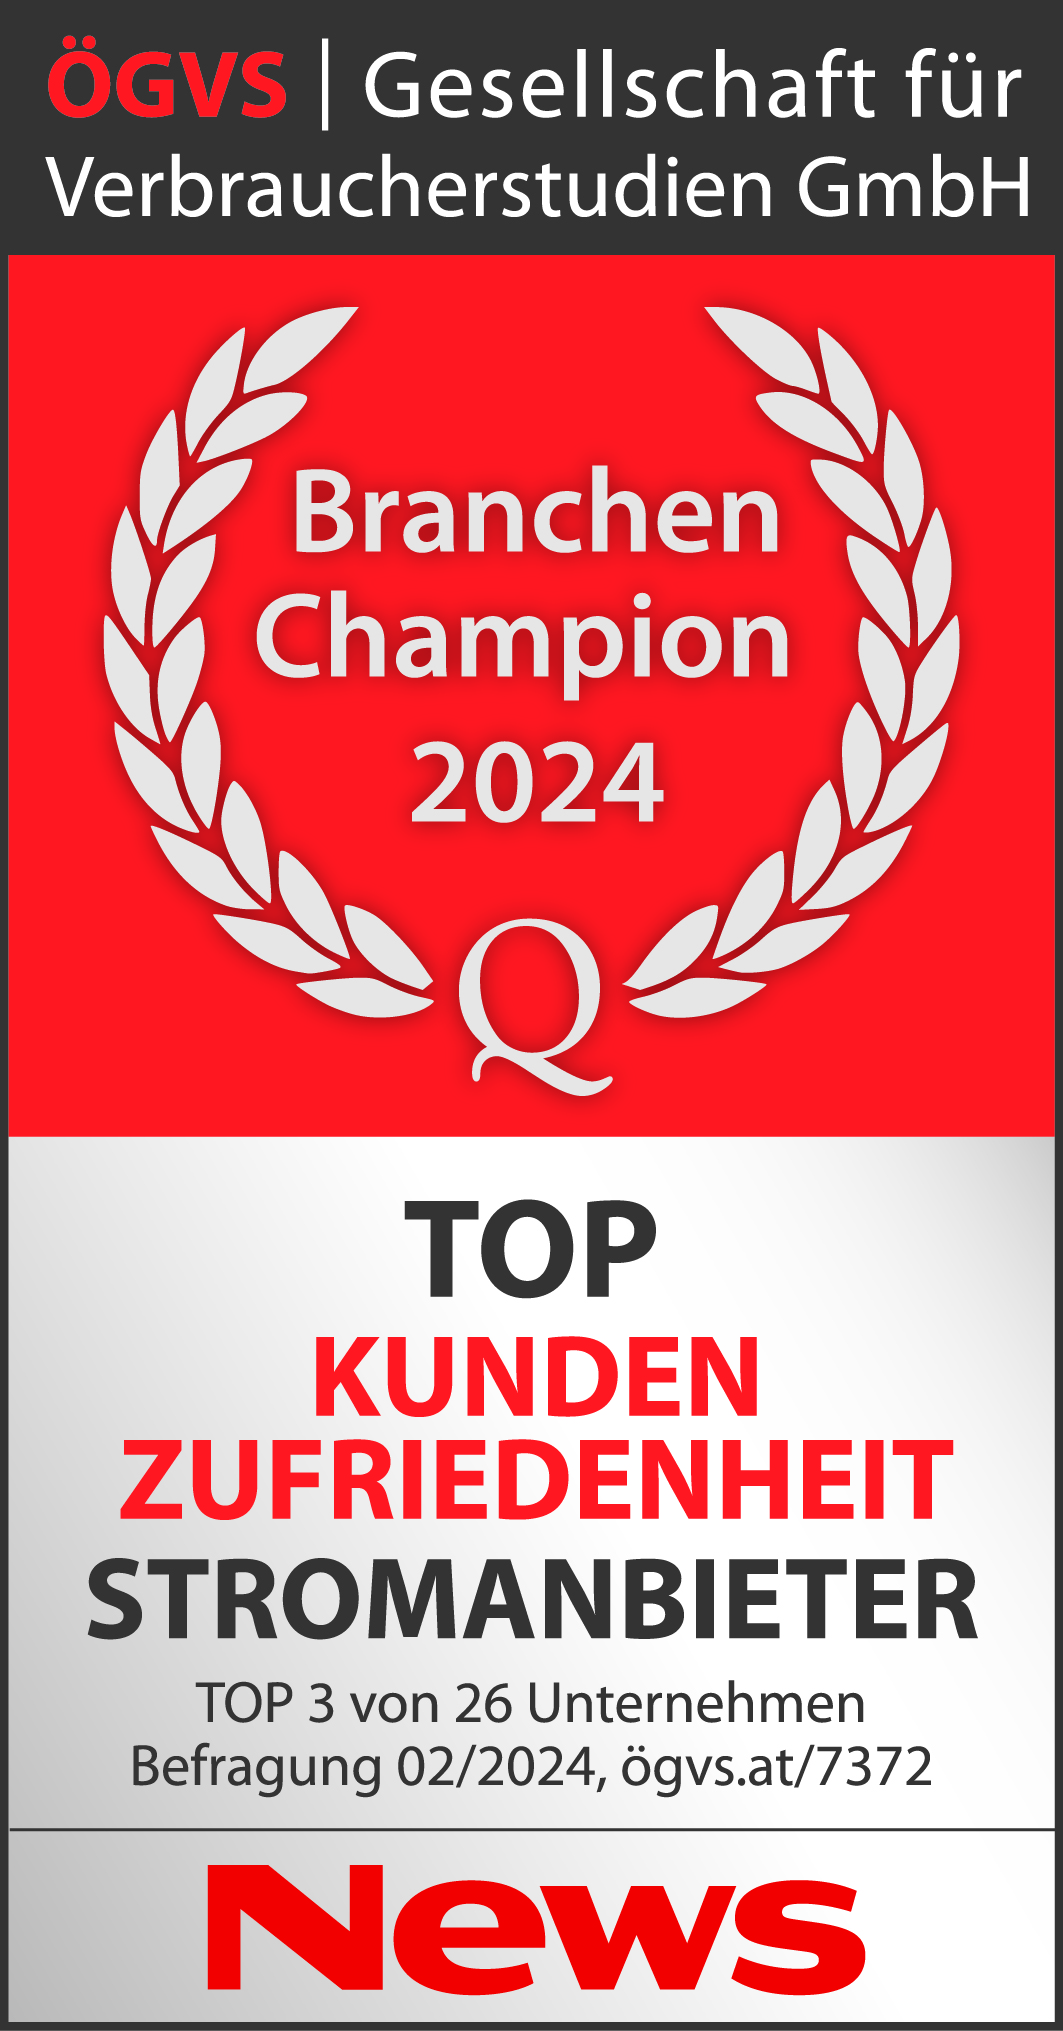 ÖGVS Branchen Champion Auszeichnung 2024: TOP Kunden Zufriedenheit Stromanbieter. Top 3 von 26 Unternehmen Befragung 02/2024 ögvs.at/7372